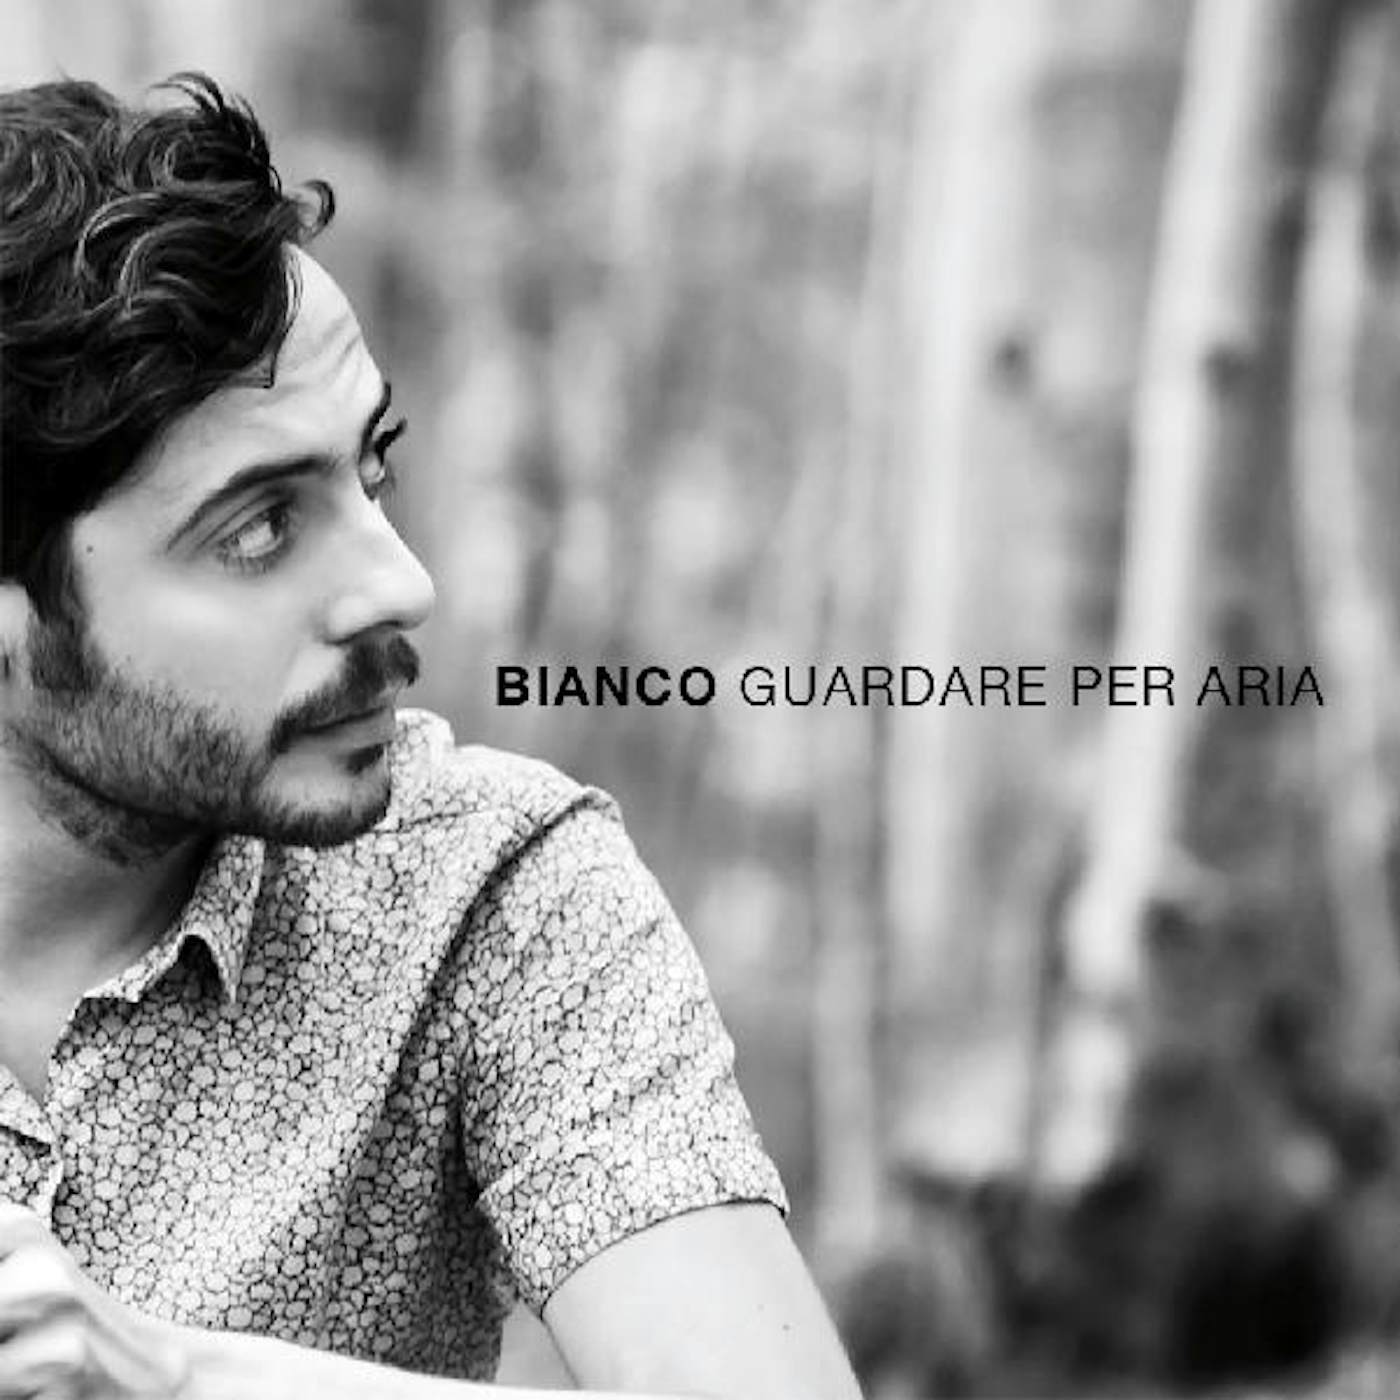 Bianco GUARDARE PER ARIA CD